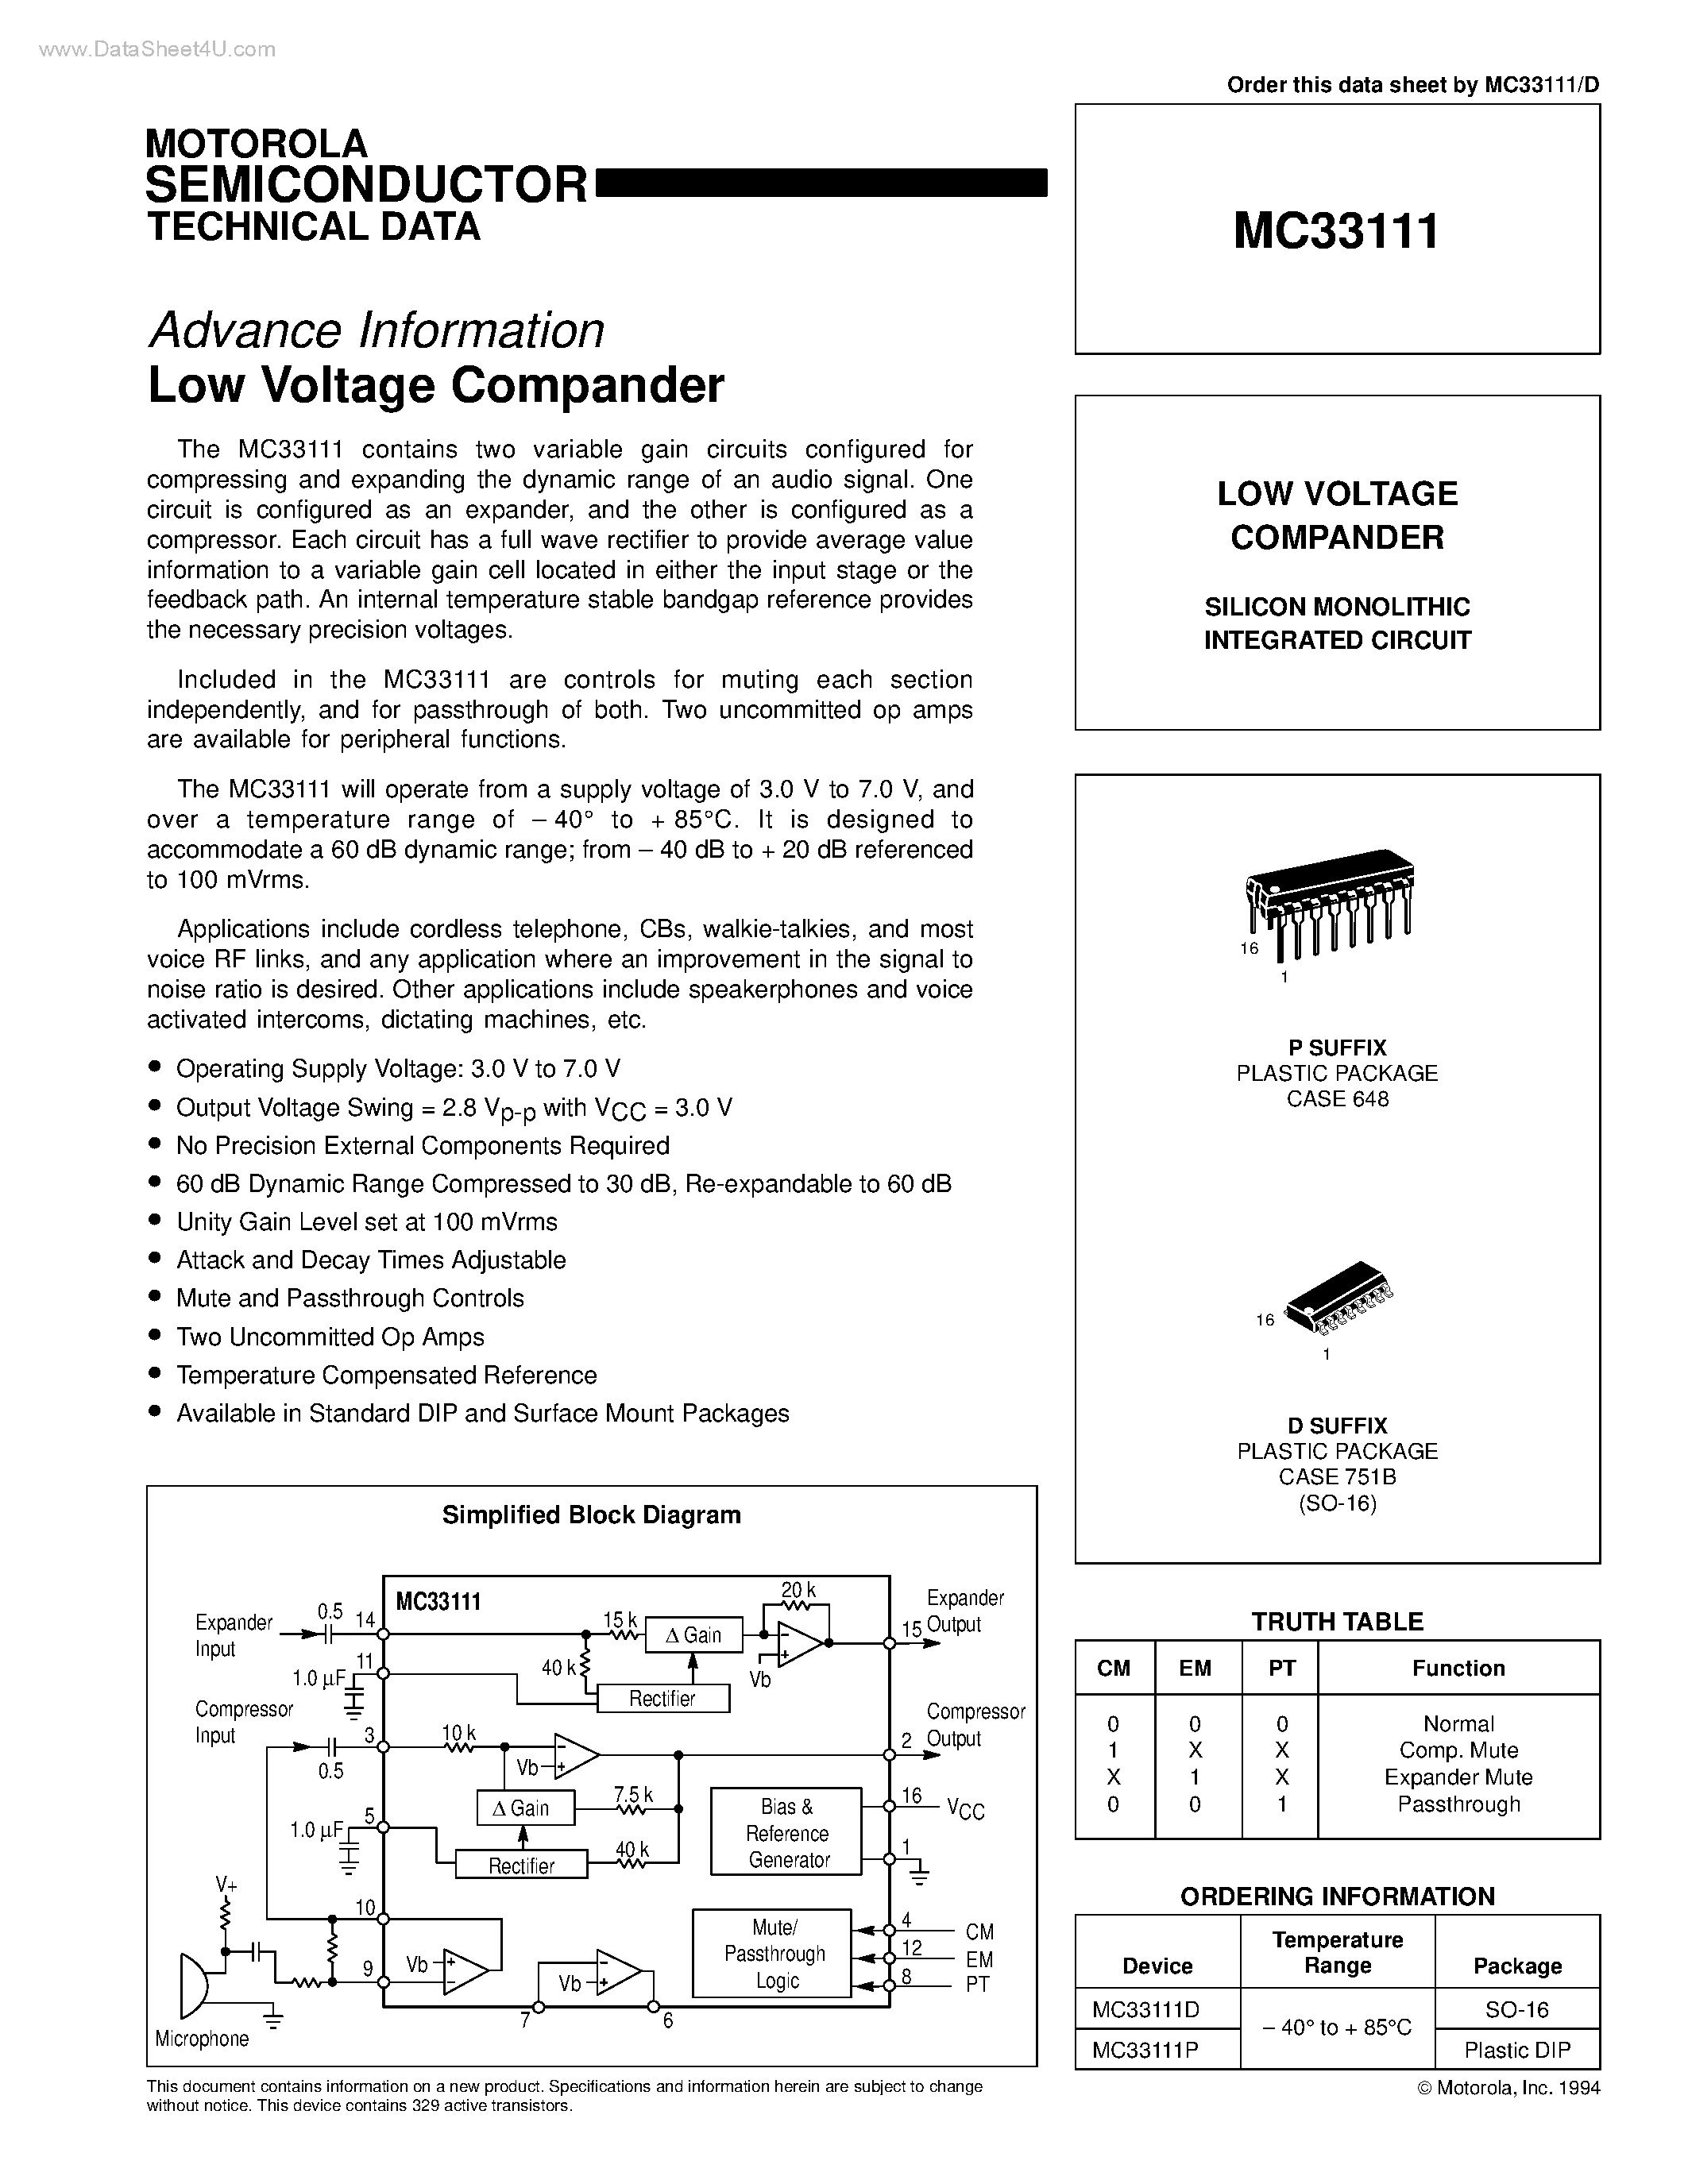 Даташит MC33111 - Low Voltage Compander страница 1